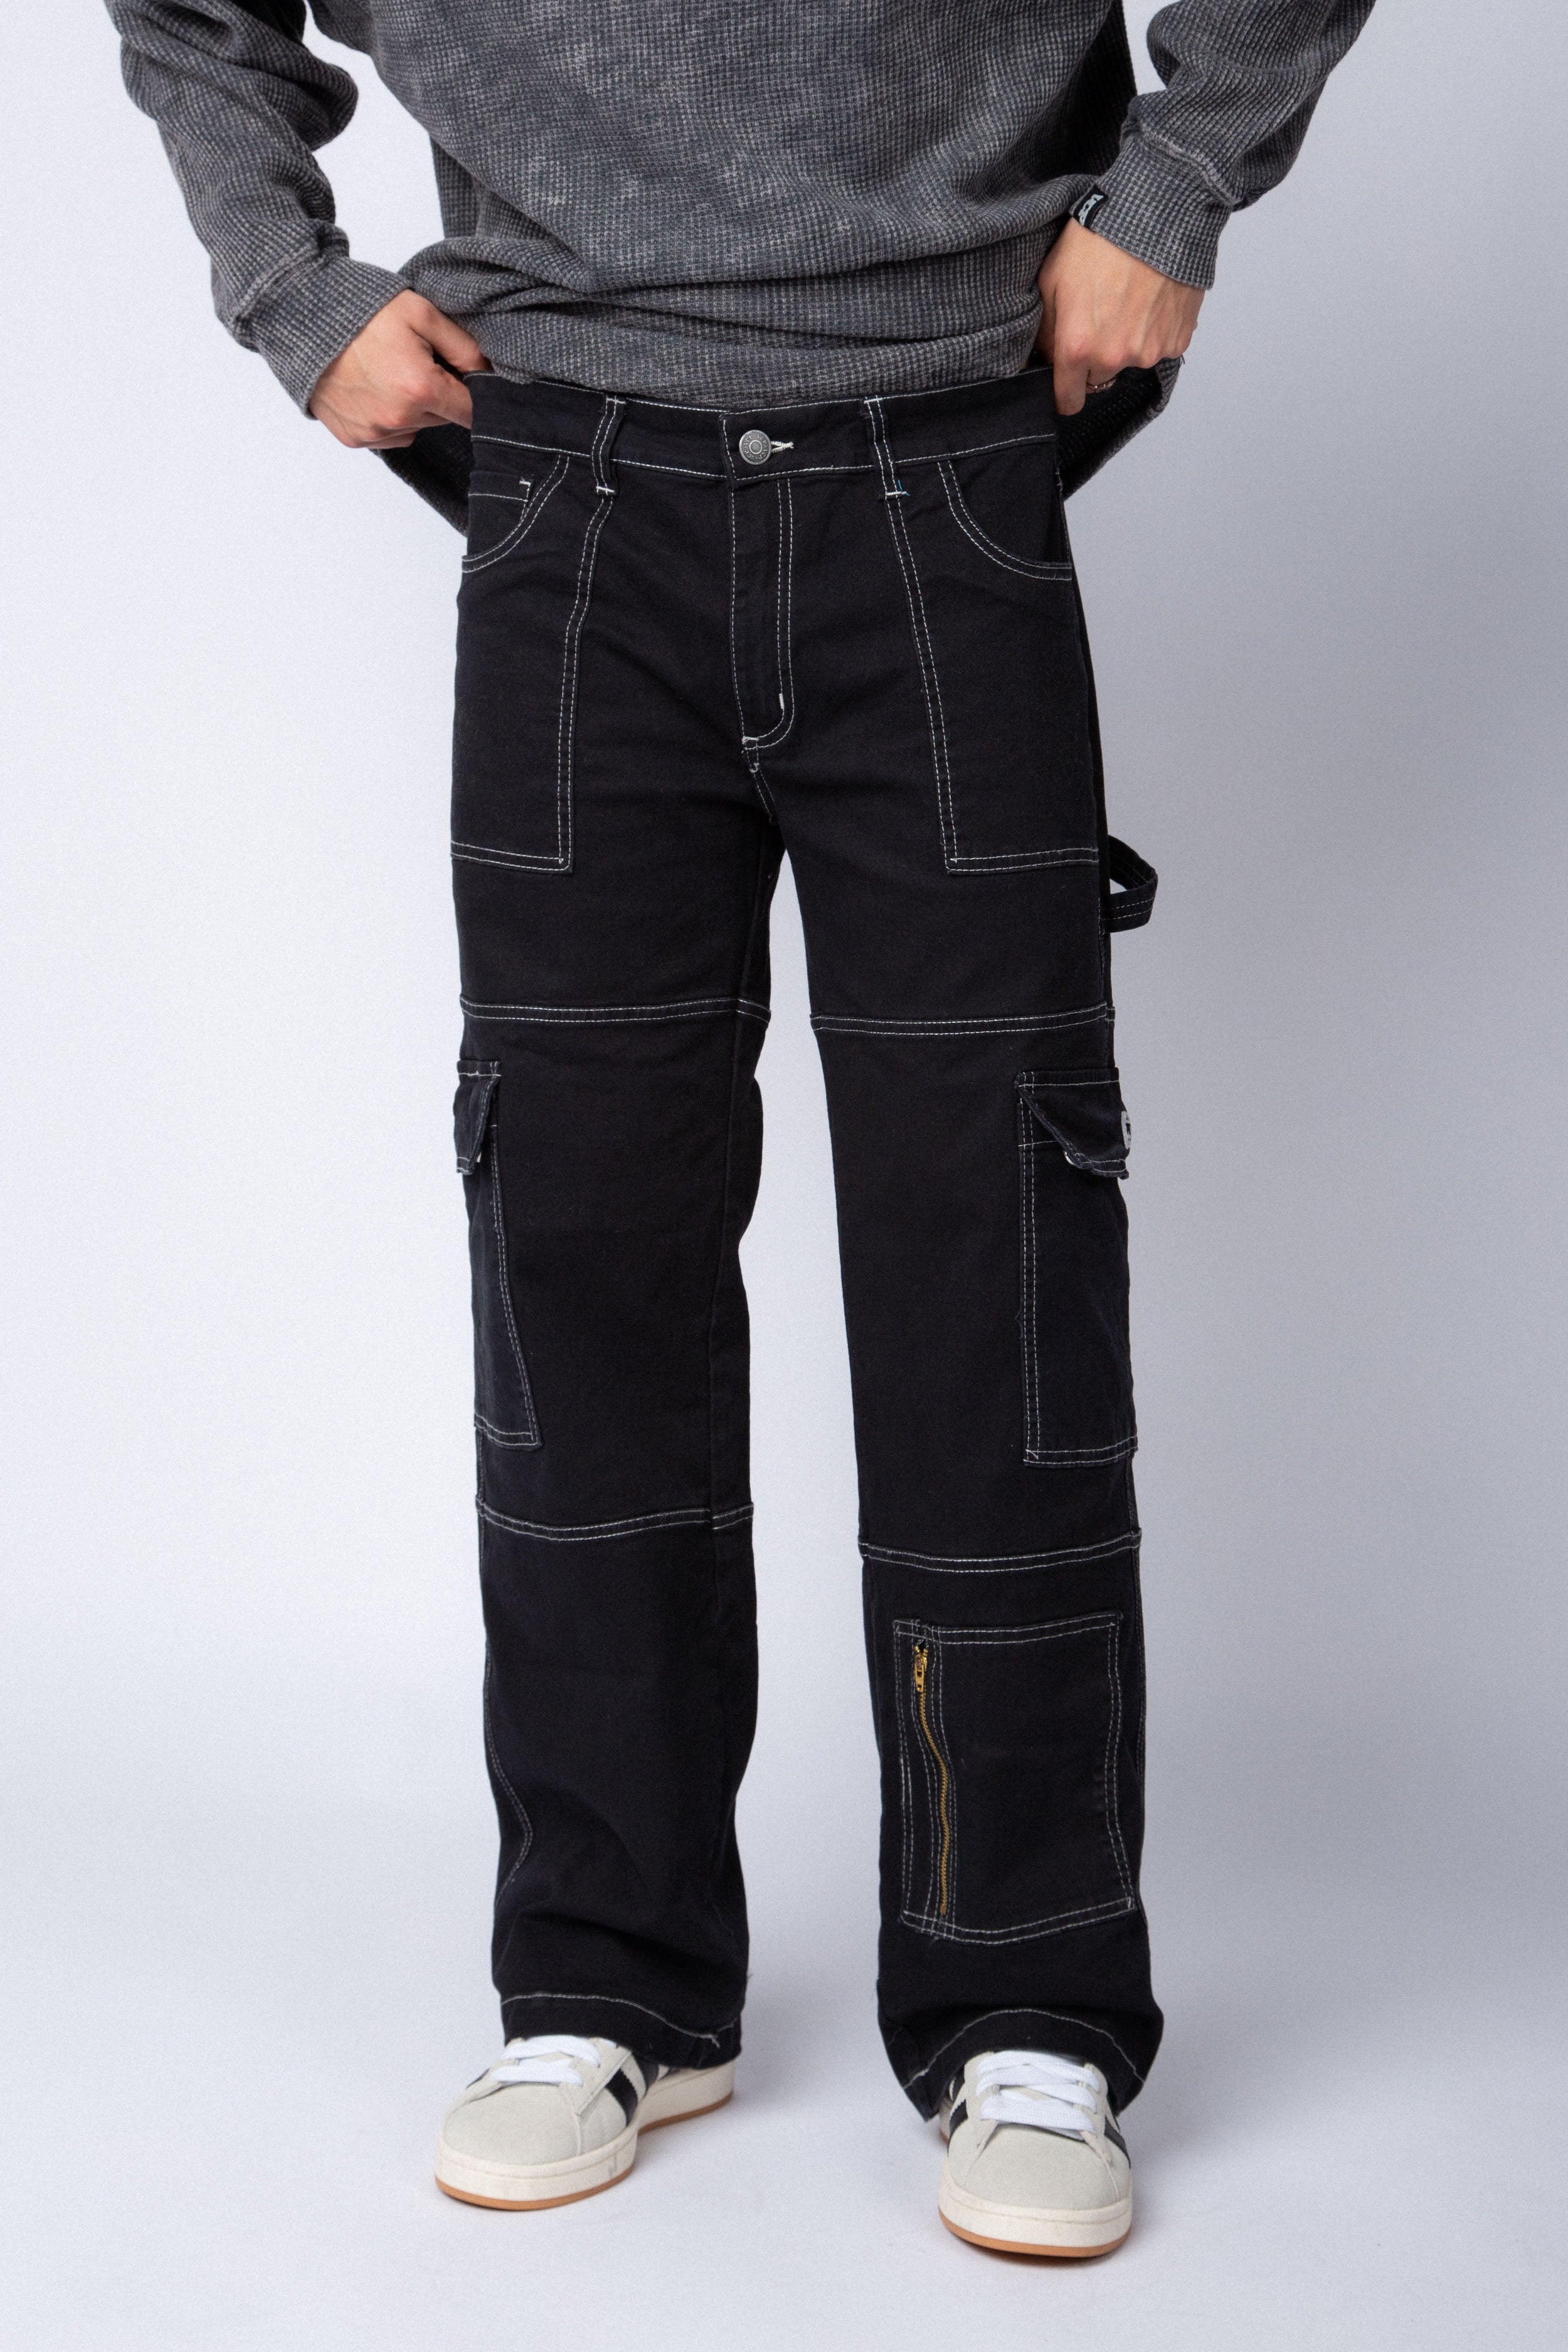 Pantalon Carpintero Bronco Negro